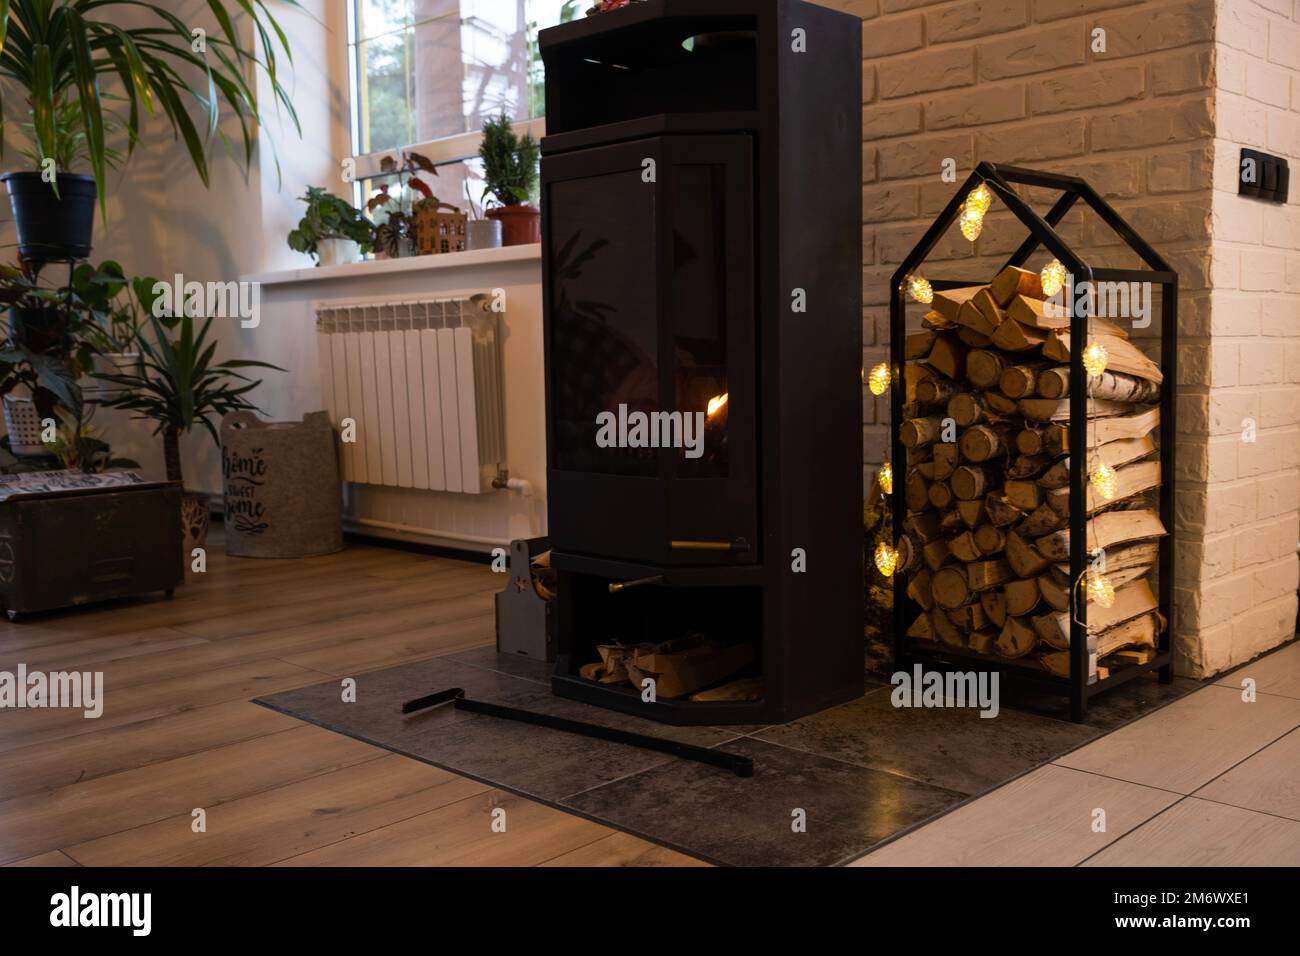 Poêle en métal noir cheminée avec bois dans une pile de bois - l'intérieur d'une maison de village privée. Chauffage et chauffage de la maison Banque D'Images